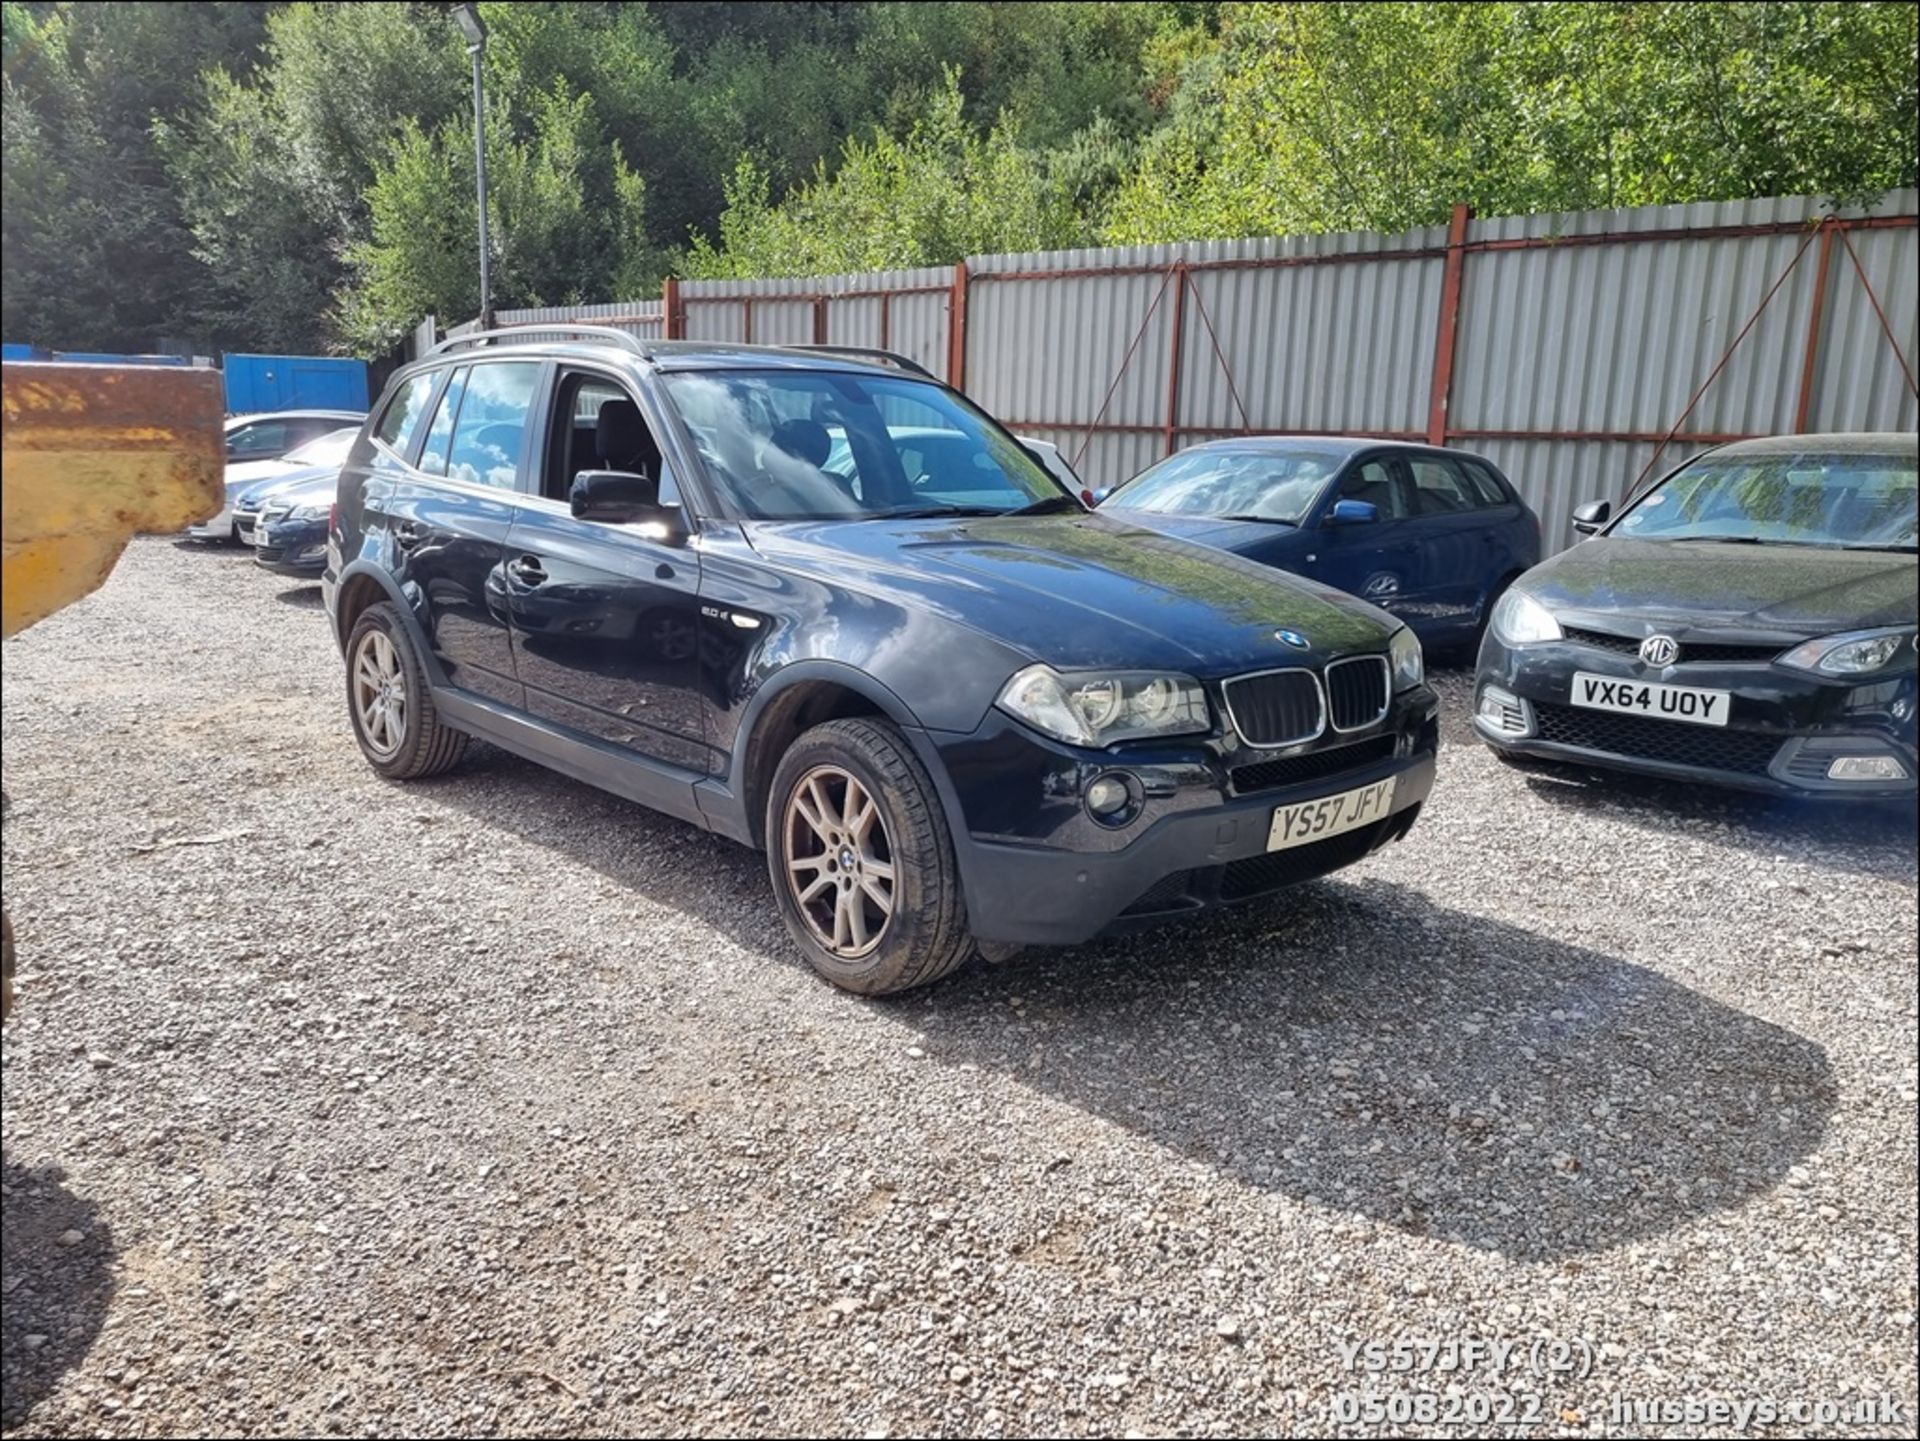 08/57 BMW X3 SE - 1995cc 5dr Estate (Black) - Image 2 of 29